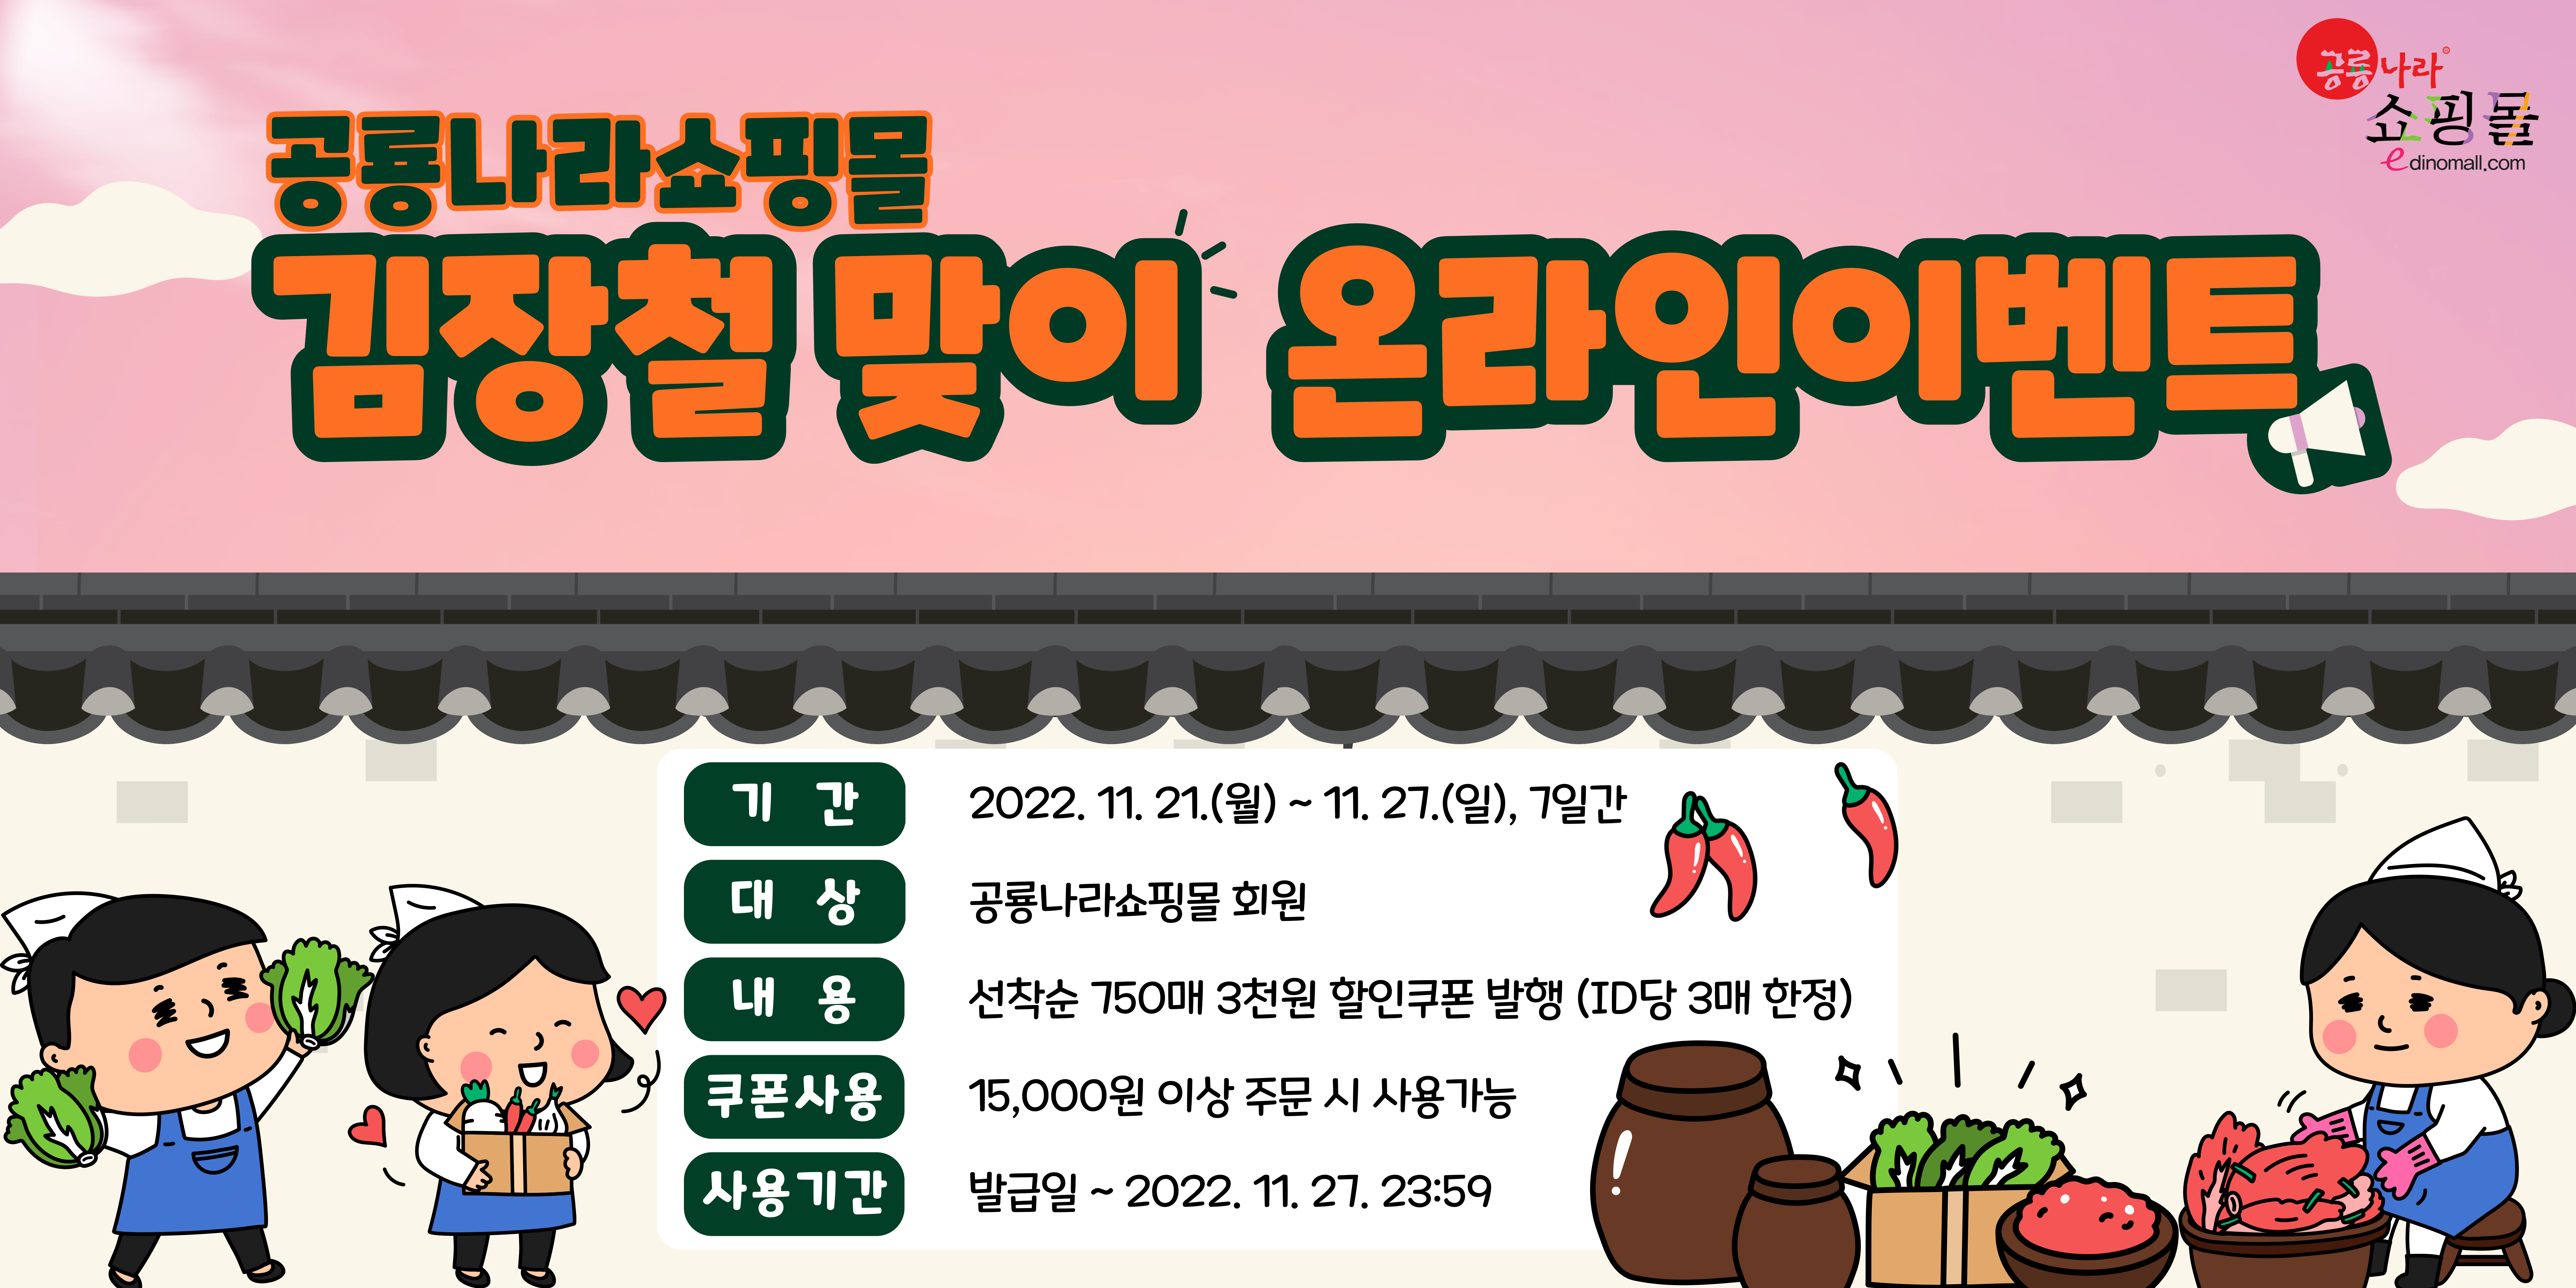 공룡나라쇼핑몰 김장철 맞이 온라인 이벤트 [농식품유통과] 1